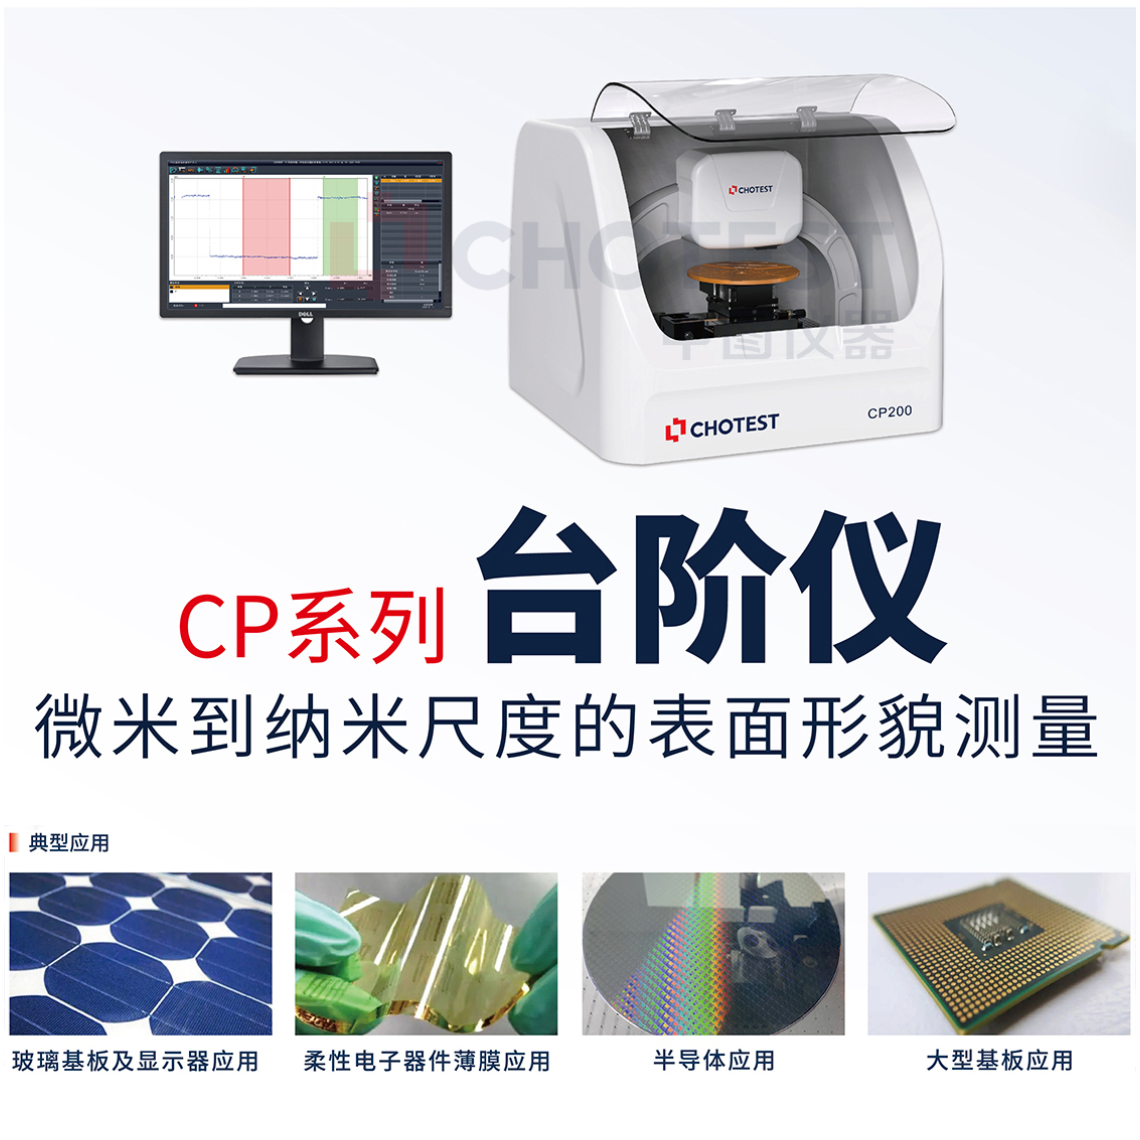 中图仪器chotest国产台阶仪品牌CP200